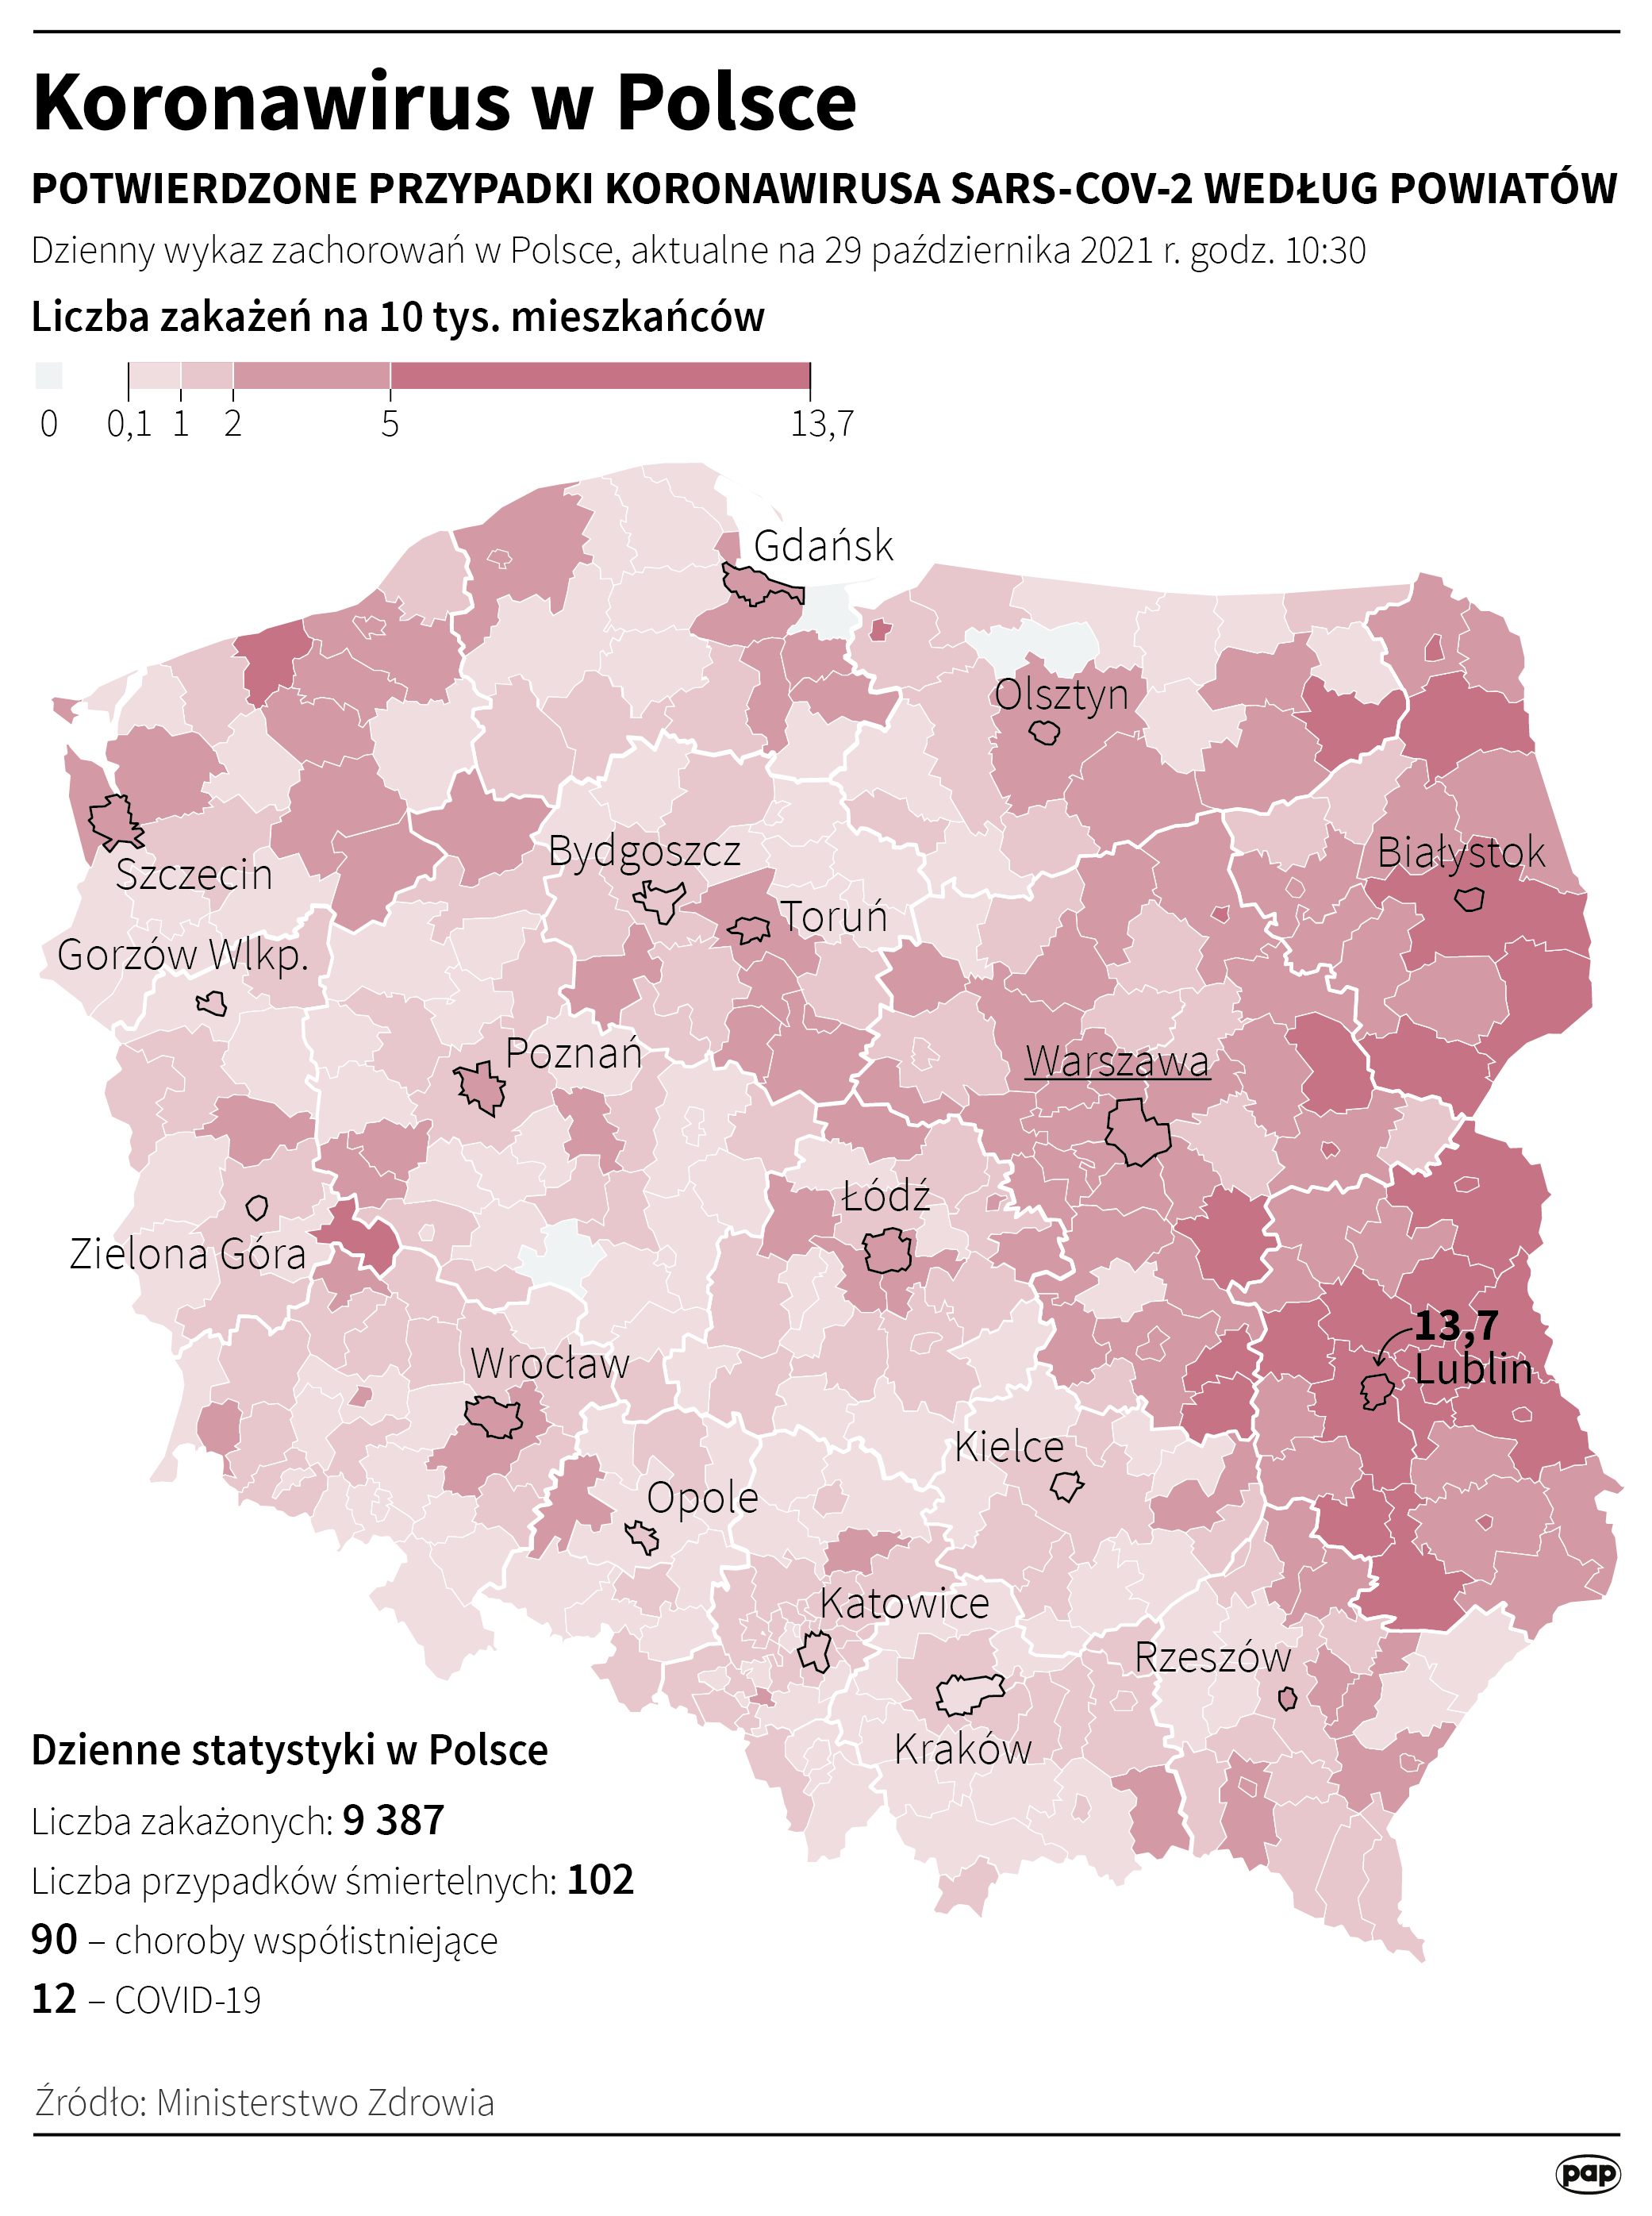 Koronawirus w Polsce [Autor: Maciej Zieliński, źródło: PAP]